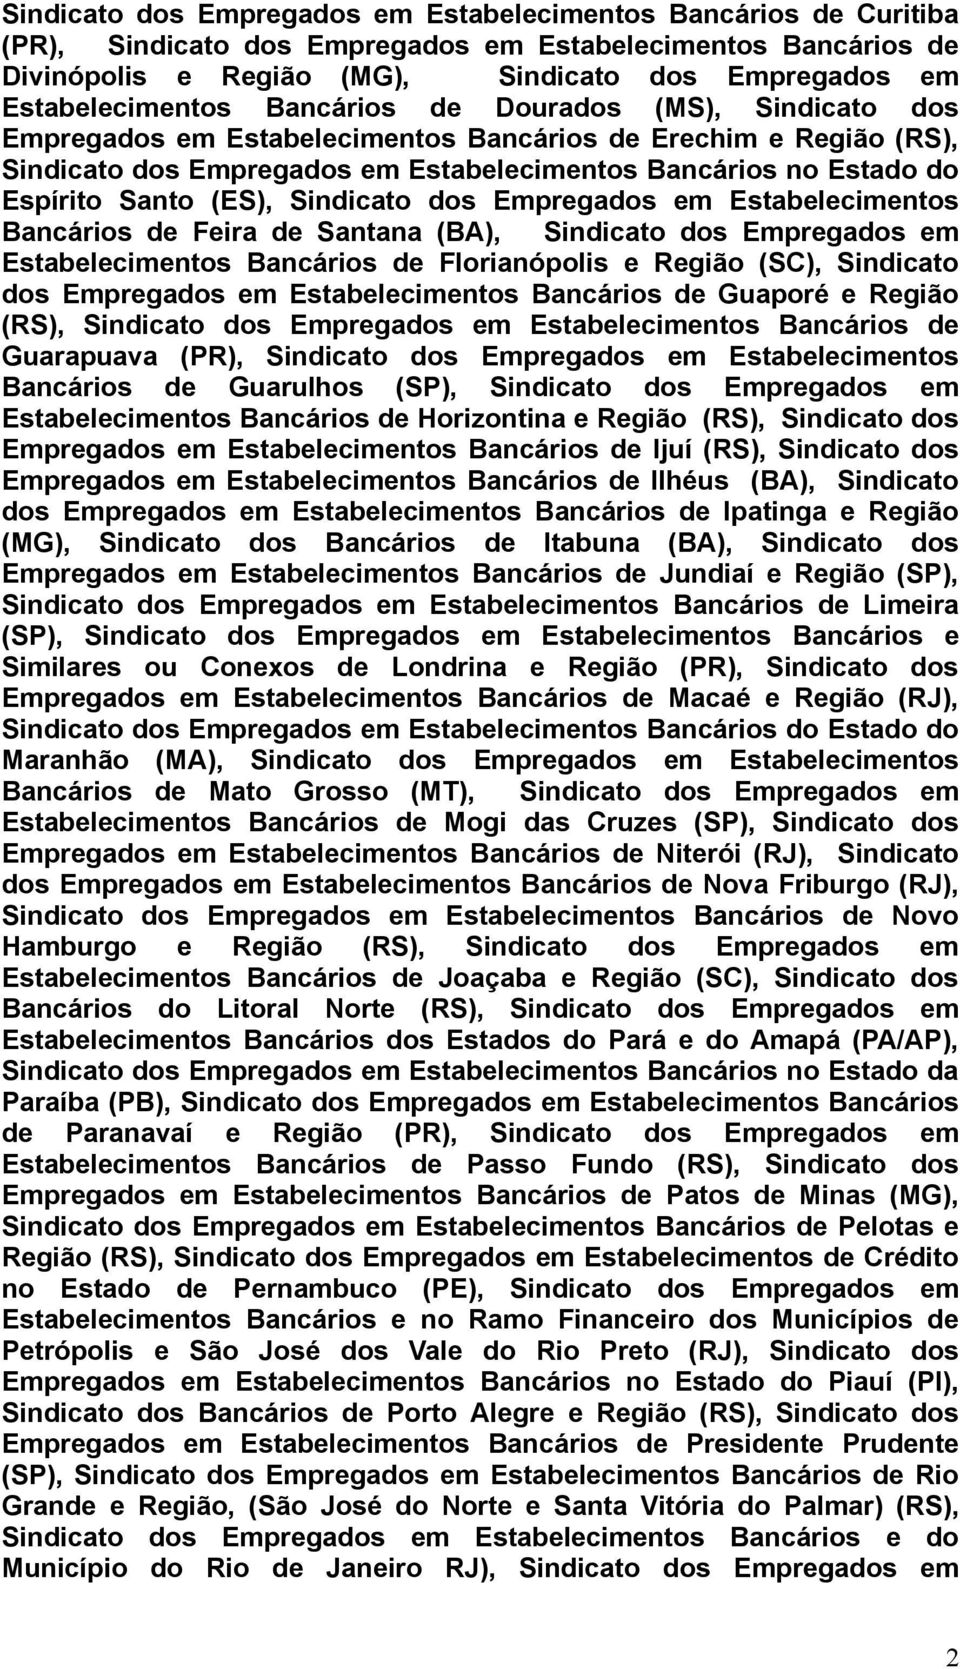 Feira de Santana (BA), Sindicato dos Empregados em Estabelecimentos Bancários de Florianópolis e Região (SC), Sindicato dos Empregados em Estabelecimentos Bancários de Guaporé e Região (RS),